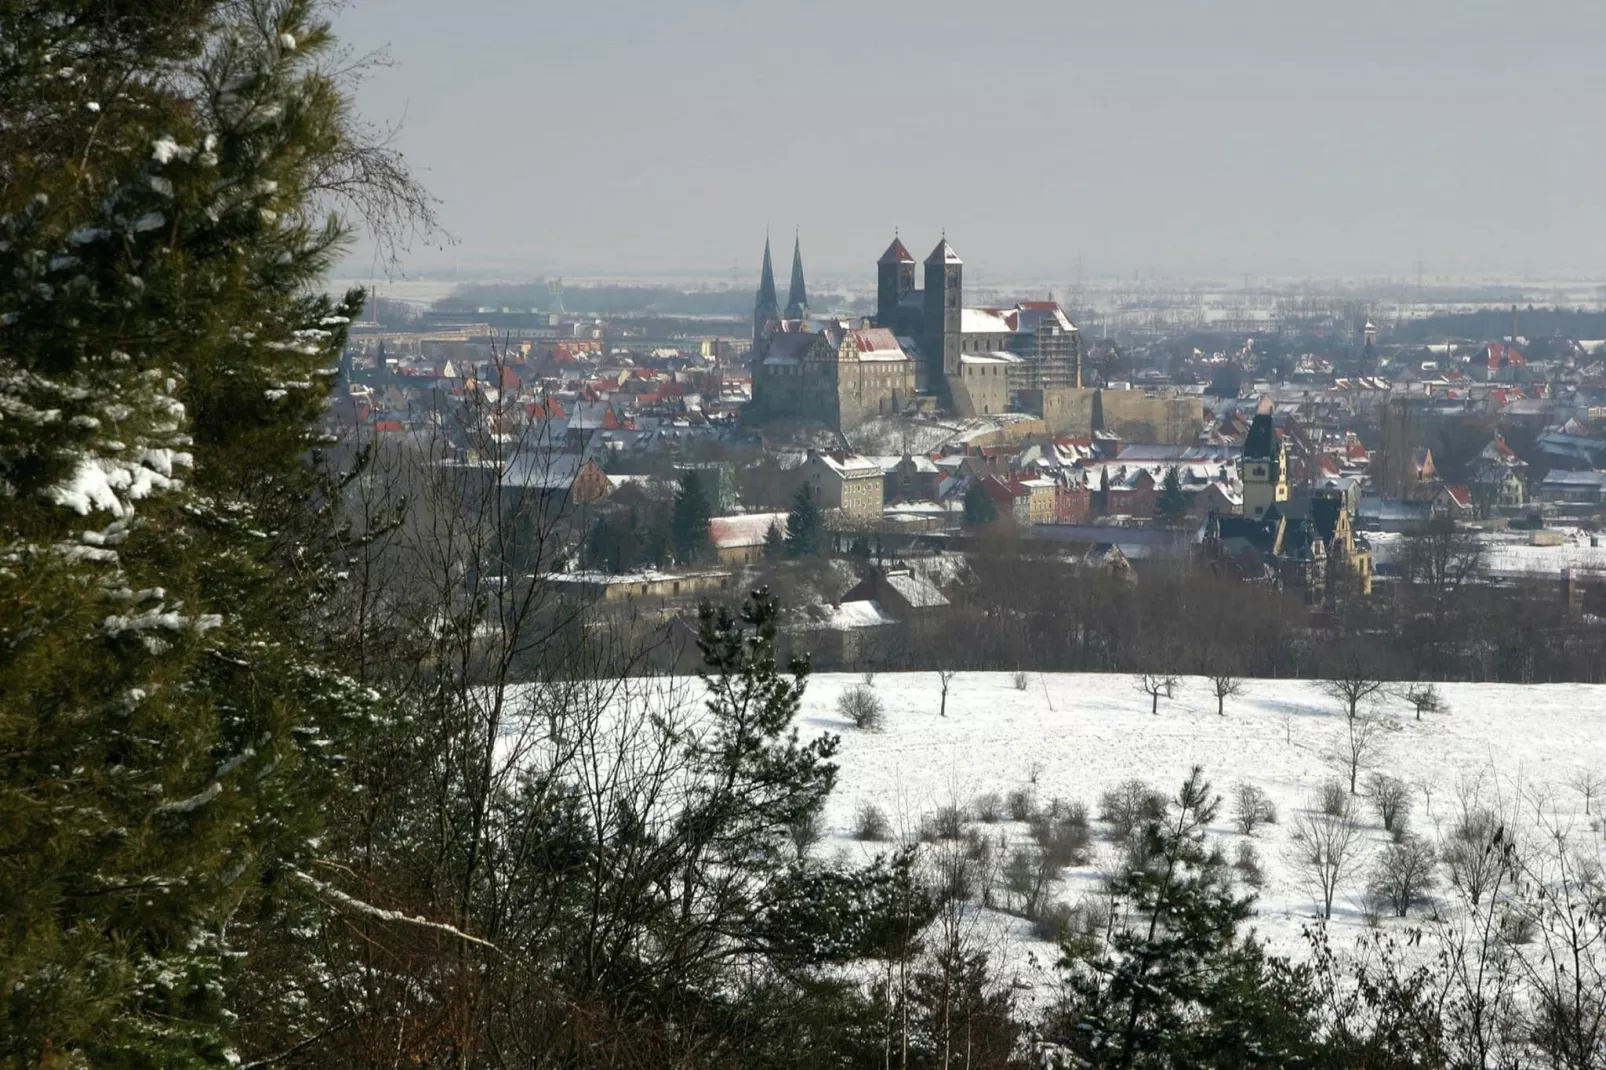 Bodeblick-Gebied winter 20km